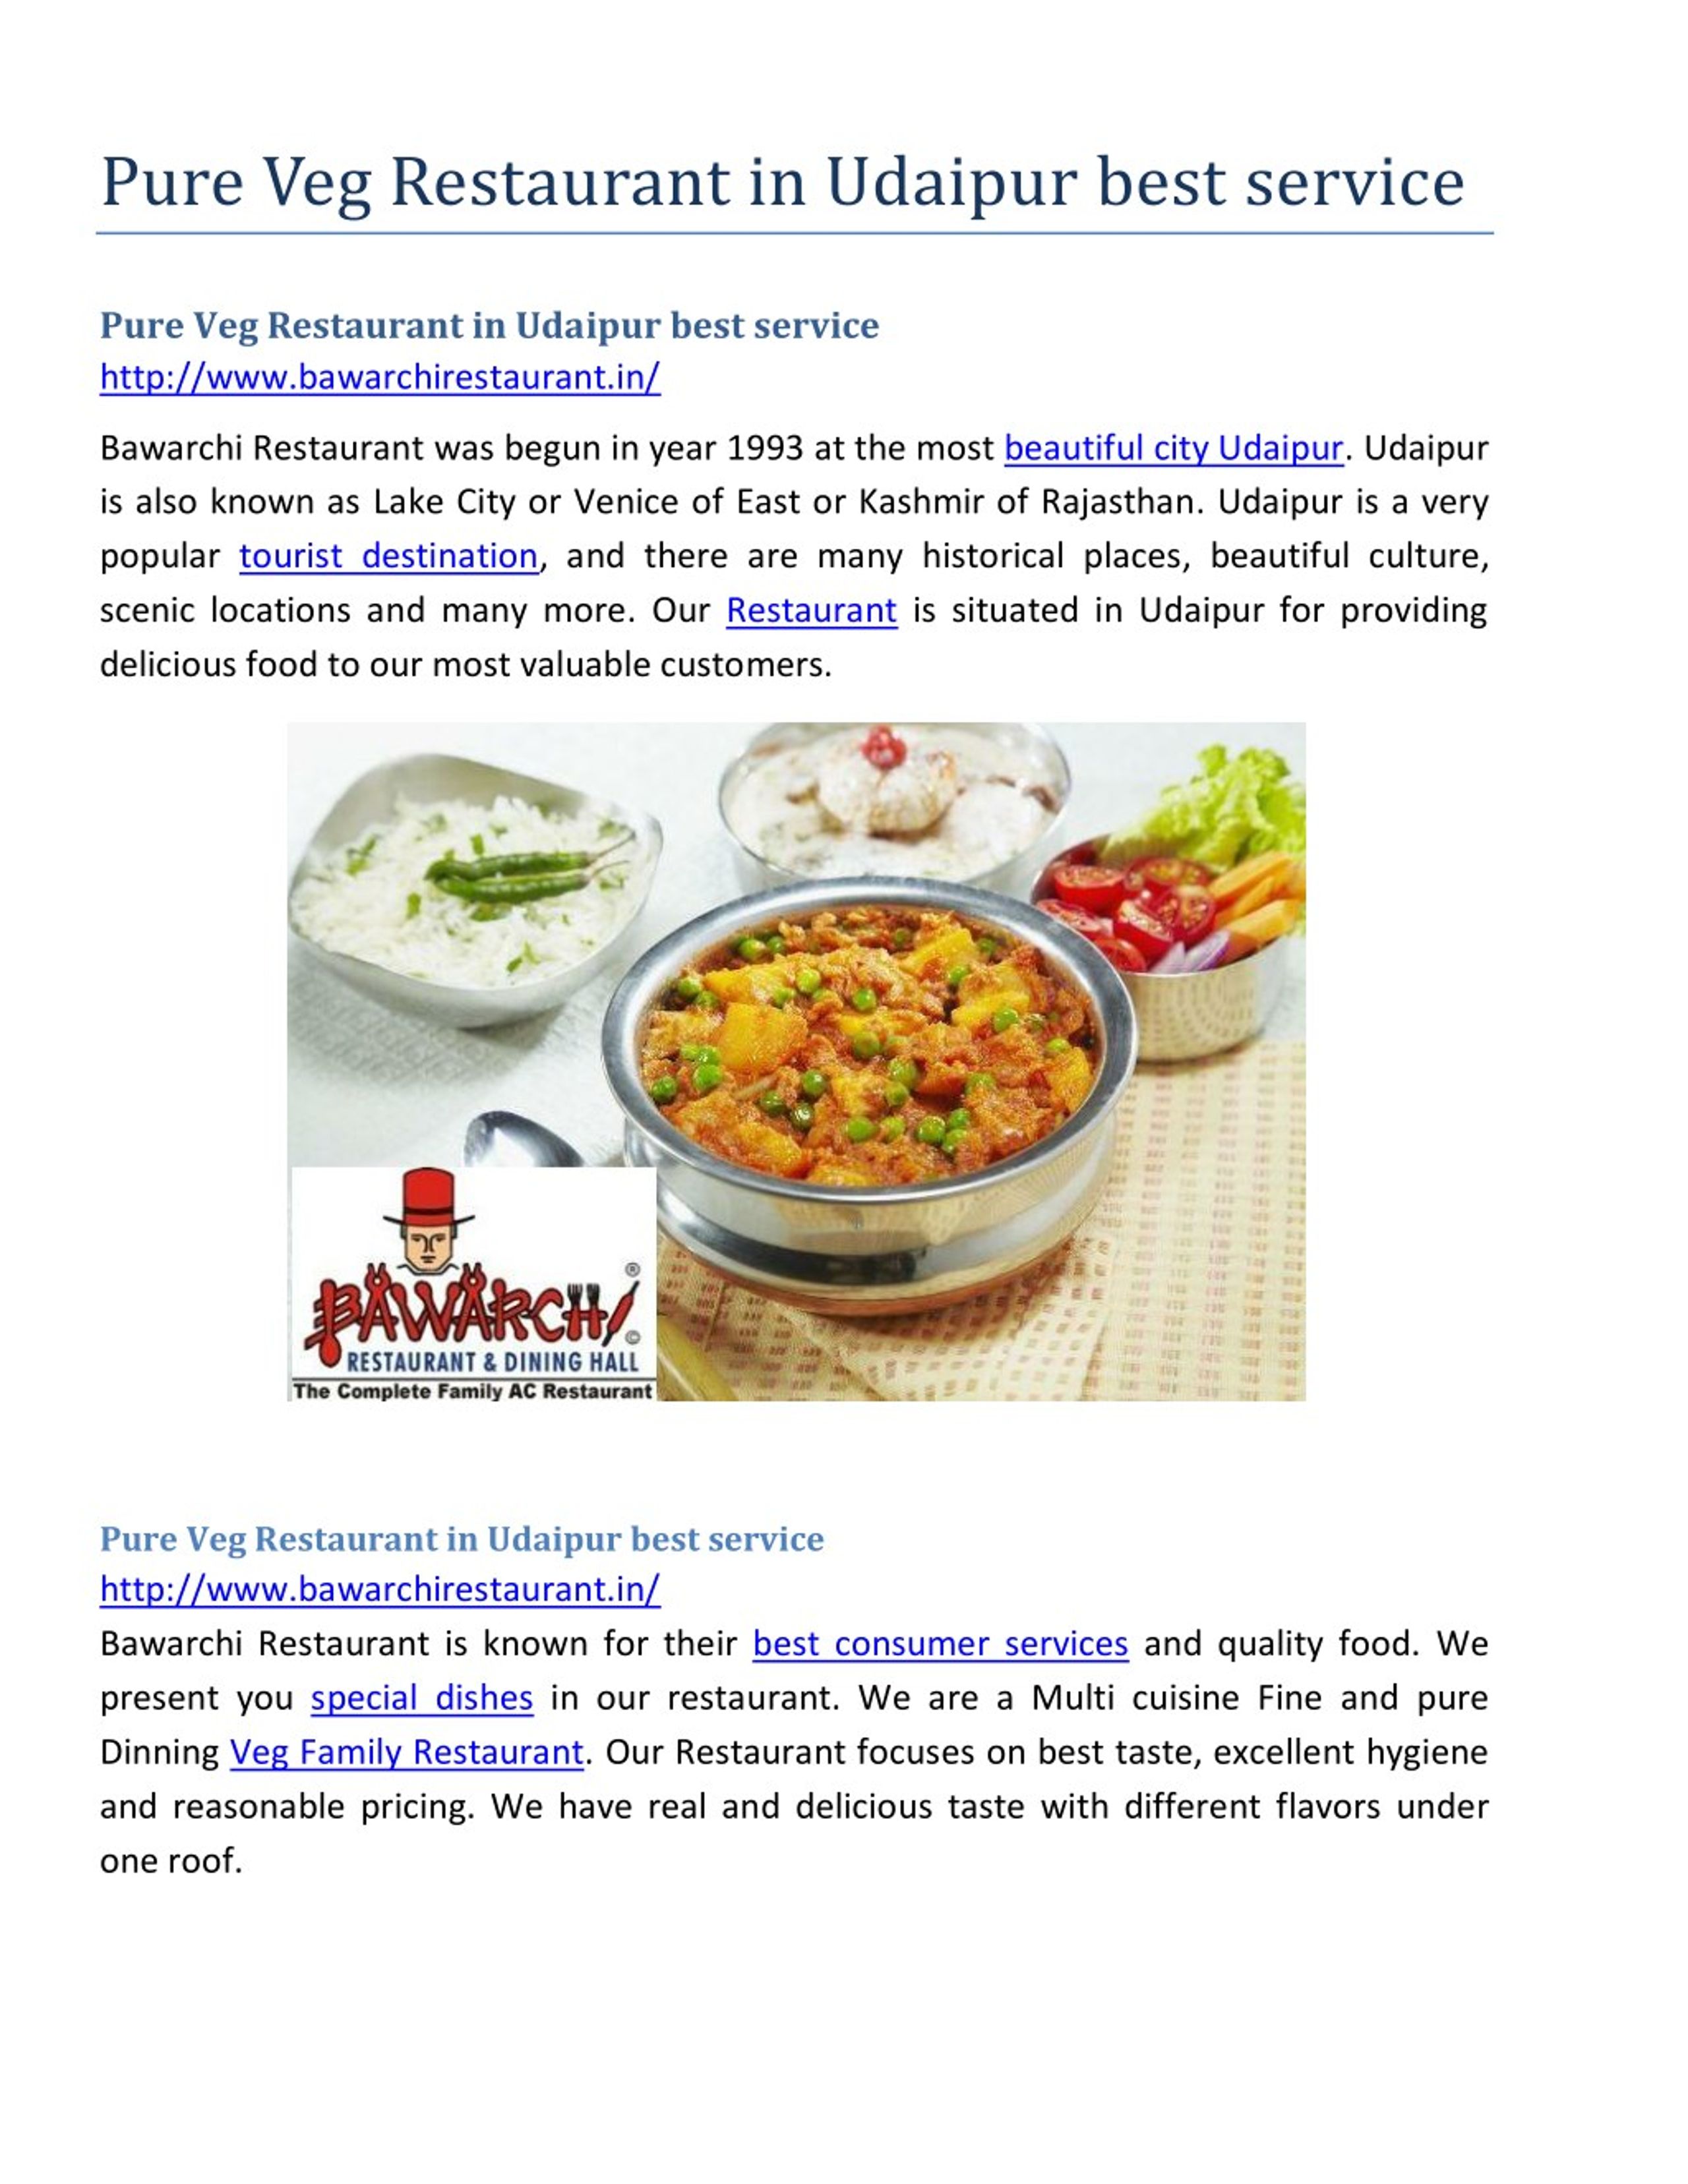 PPT - Pure Veg Restaurant in Udaipur best service PowerPoint